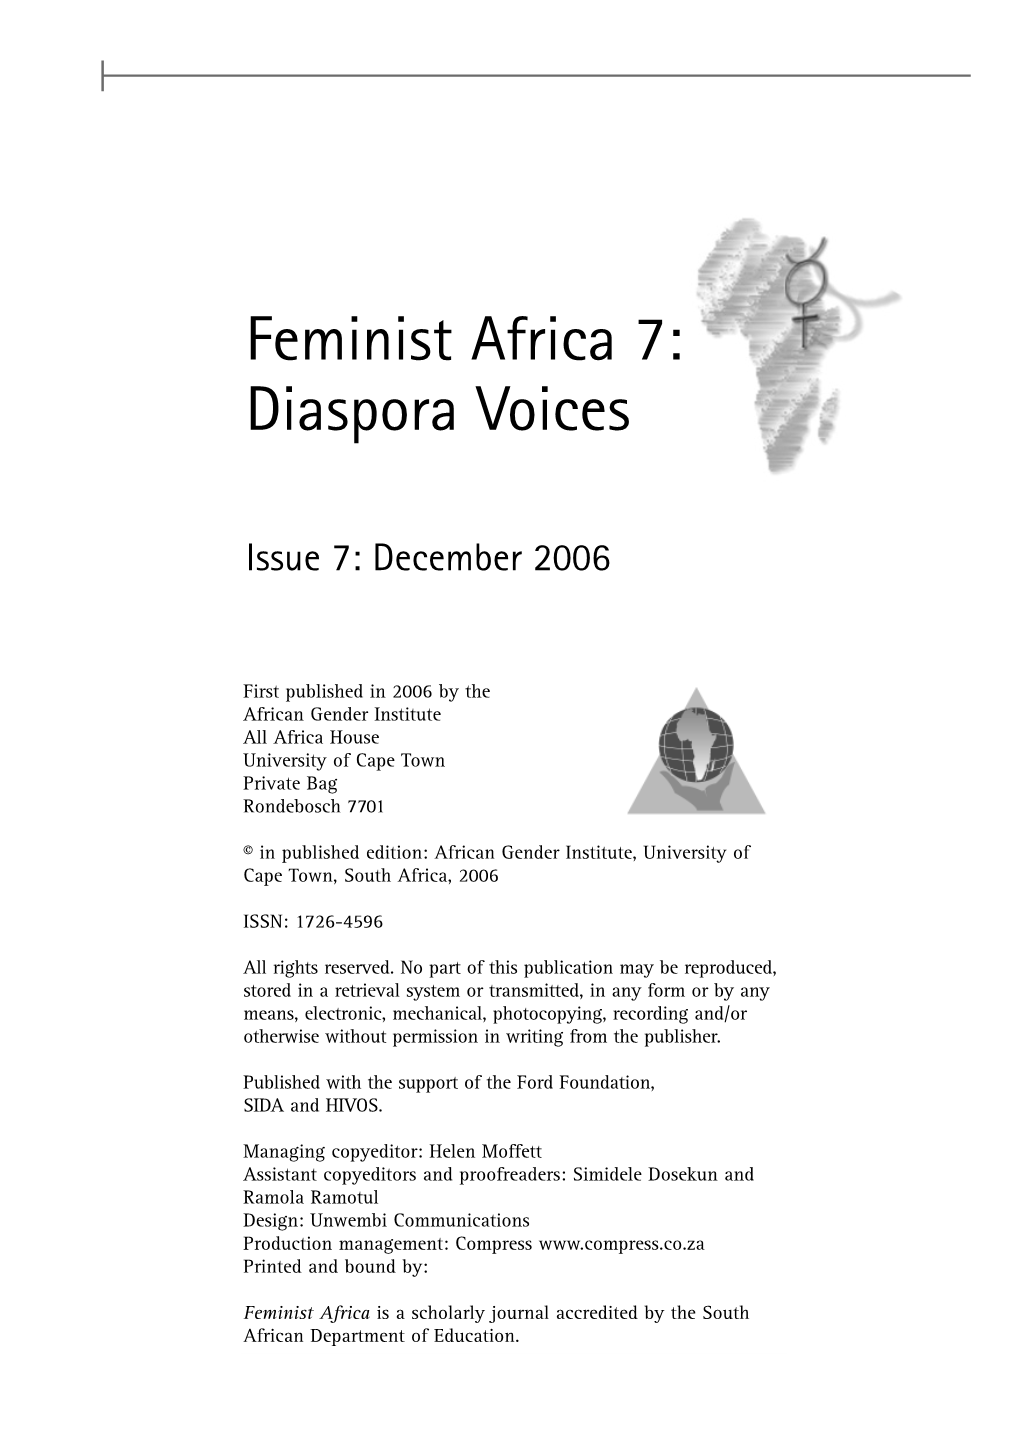 Feminist Africa 7: Diaspora Voices